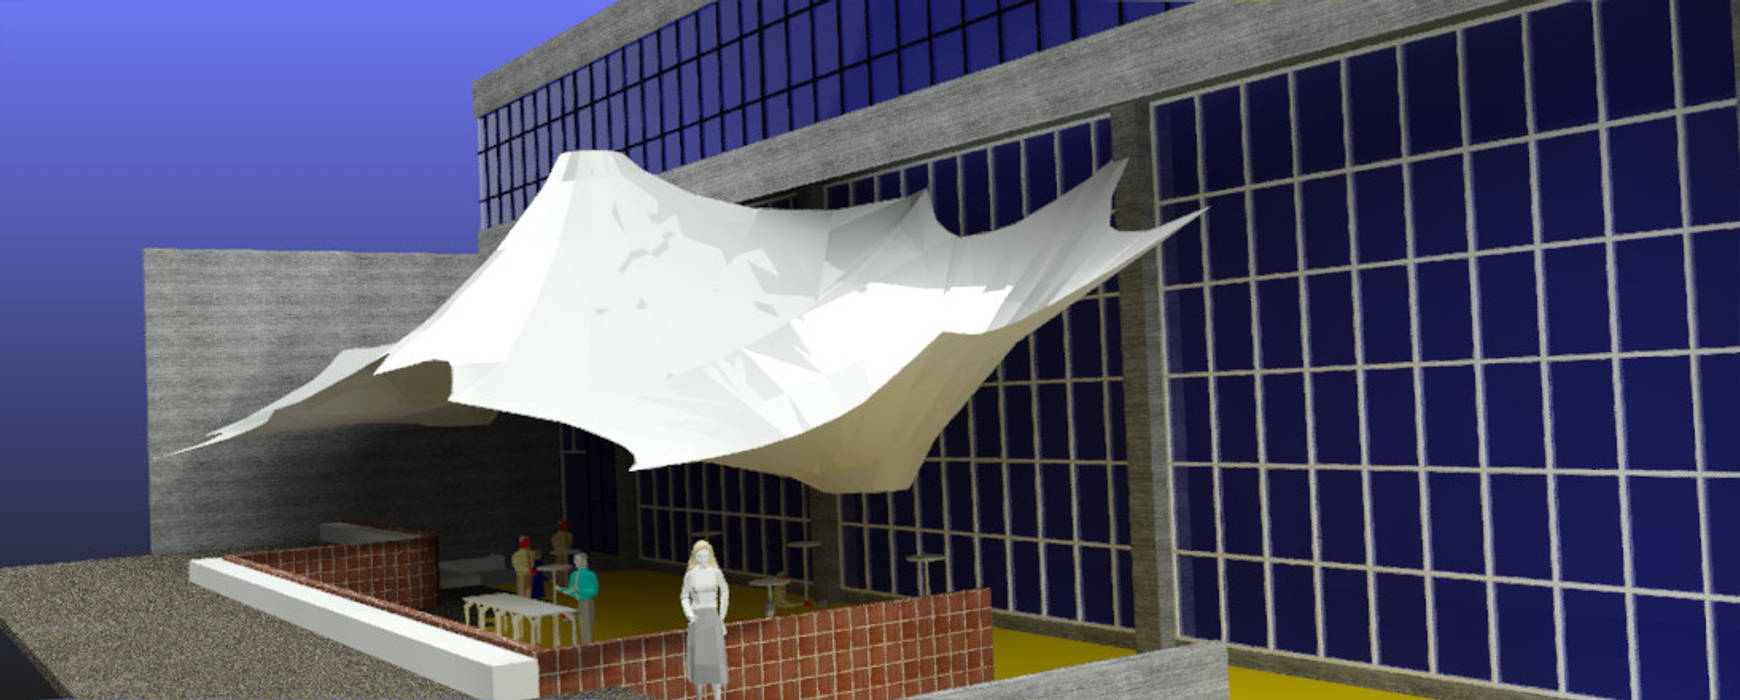 Propuestas de cubiertas textiles de doble curvatura para espacios abiertos de la Universidad Metropolitana, JOSE RAFAEL FERERO ARQUITECTO JOSE RAFAEL FERERO ARQUITECTO